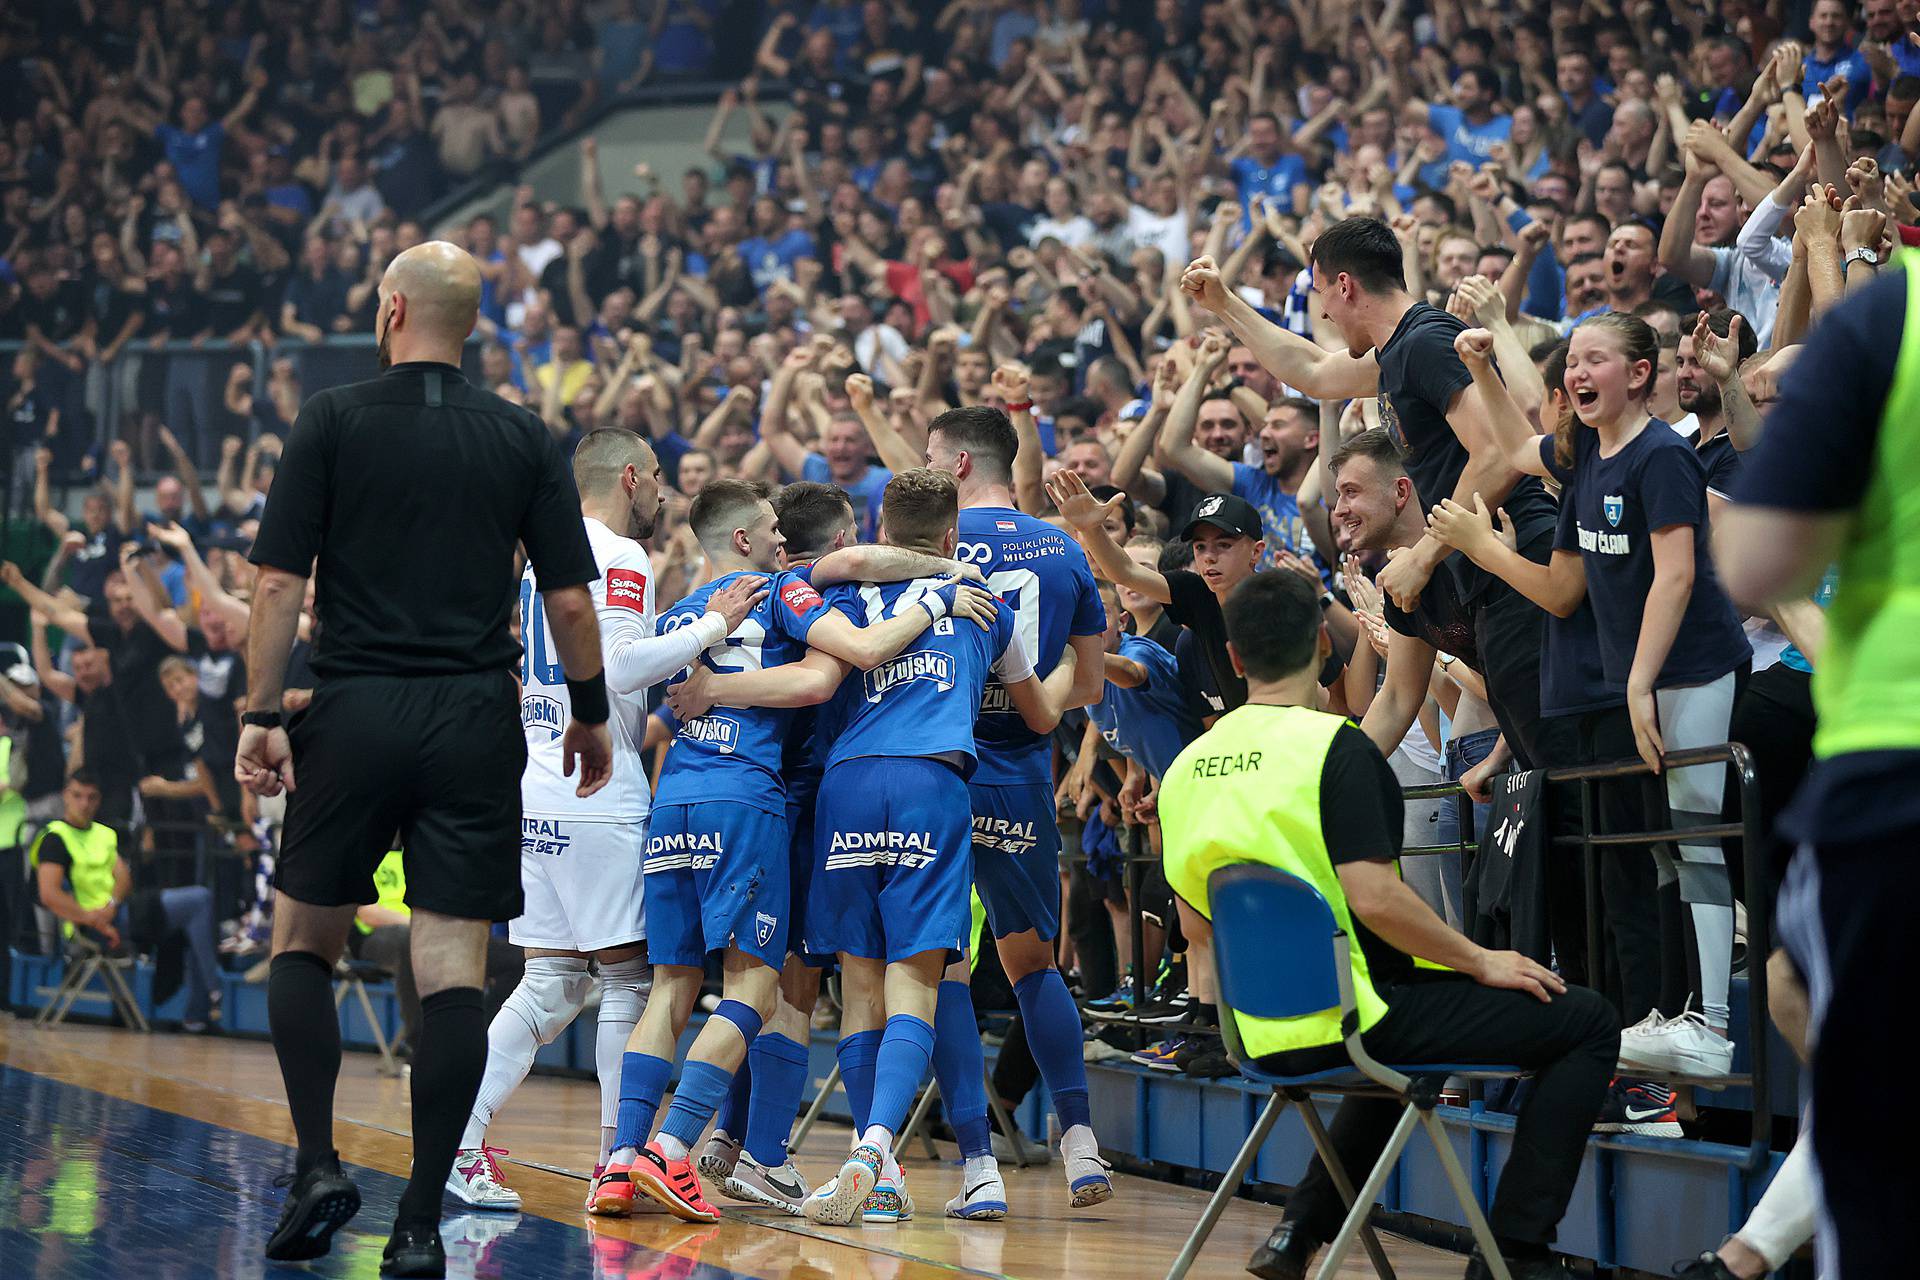 Zagreb: ?etvrta utakmica finalne serije 1.HMNL izme?u Futsal Dinama i Olmissuma